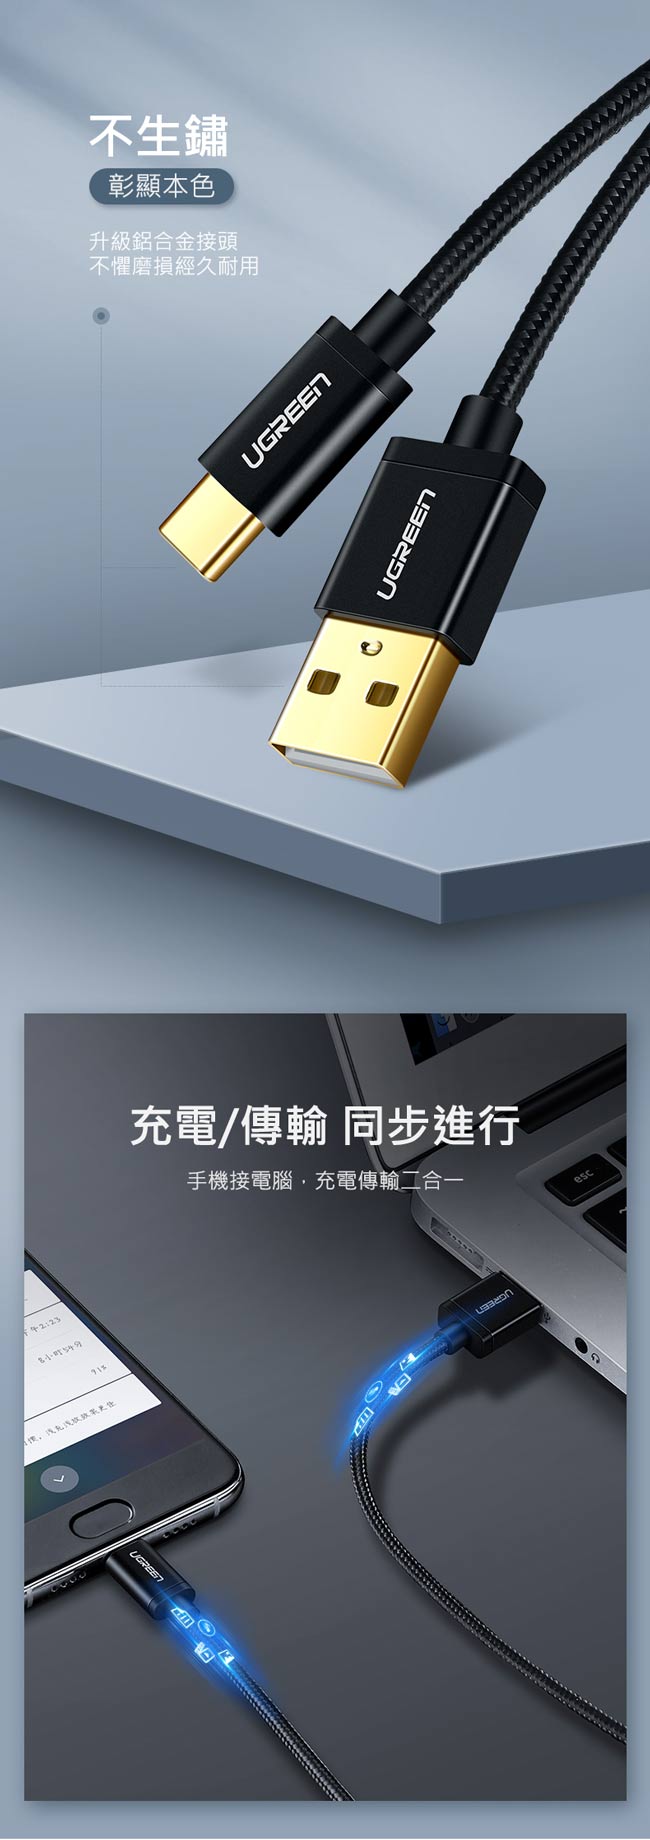 綠聯 USB Type-C快充傳輸線 BRAID版 深邃黑 2M